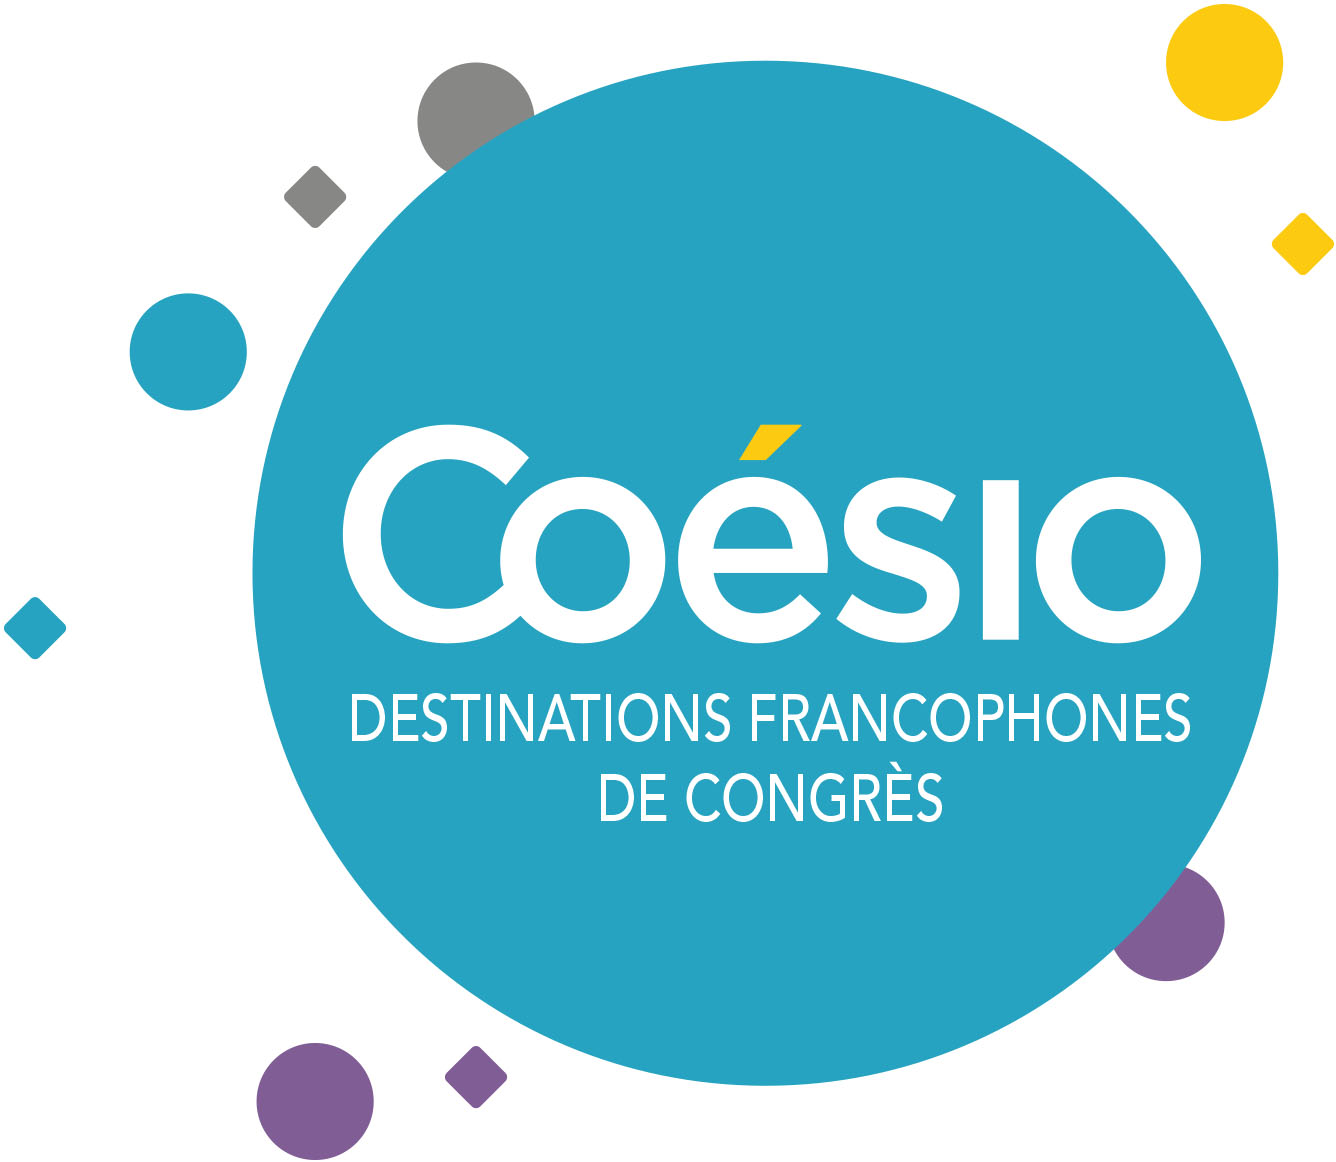 Destinations Francophones de CongrÃ¨s